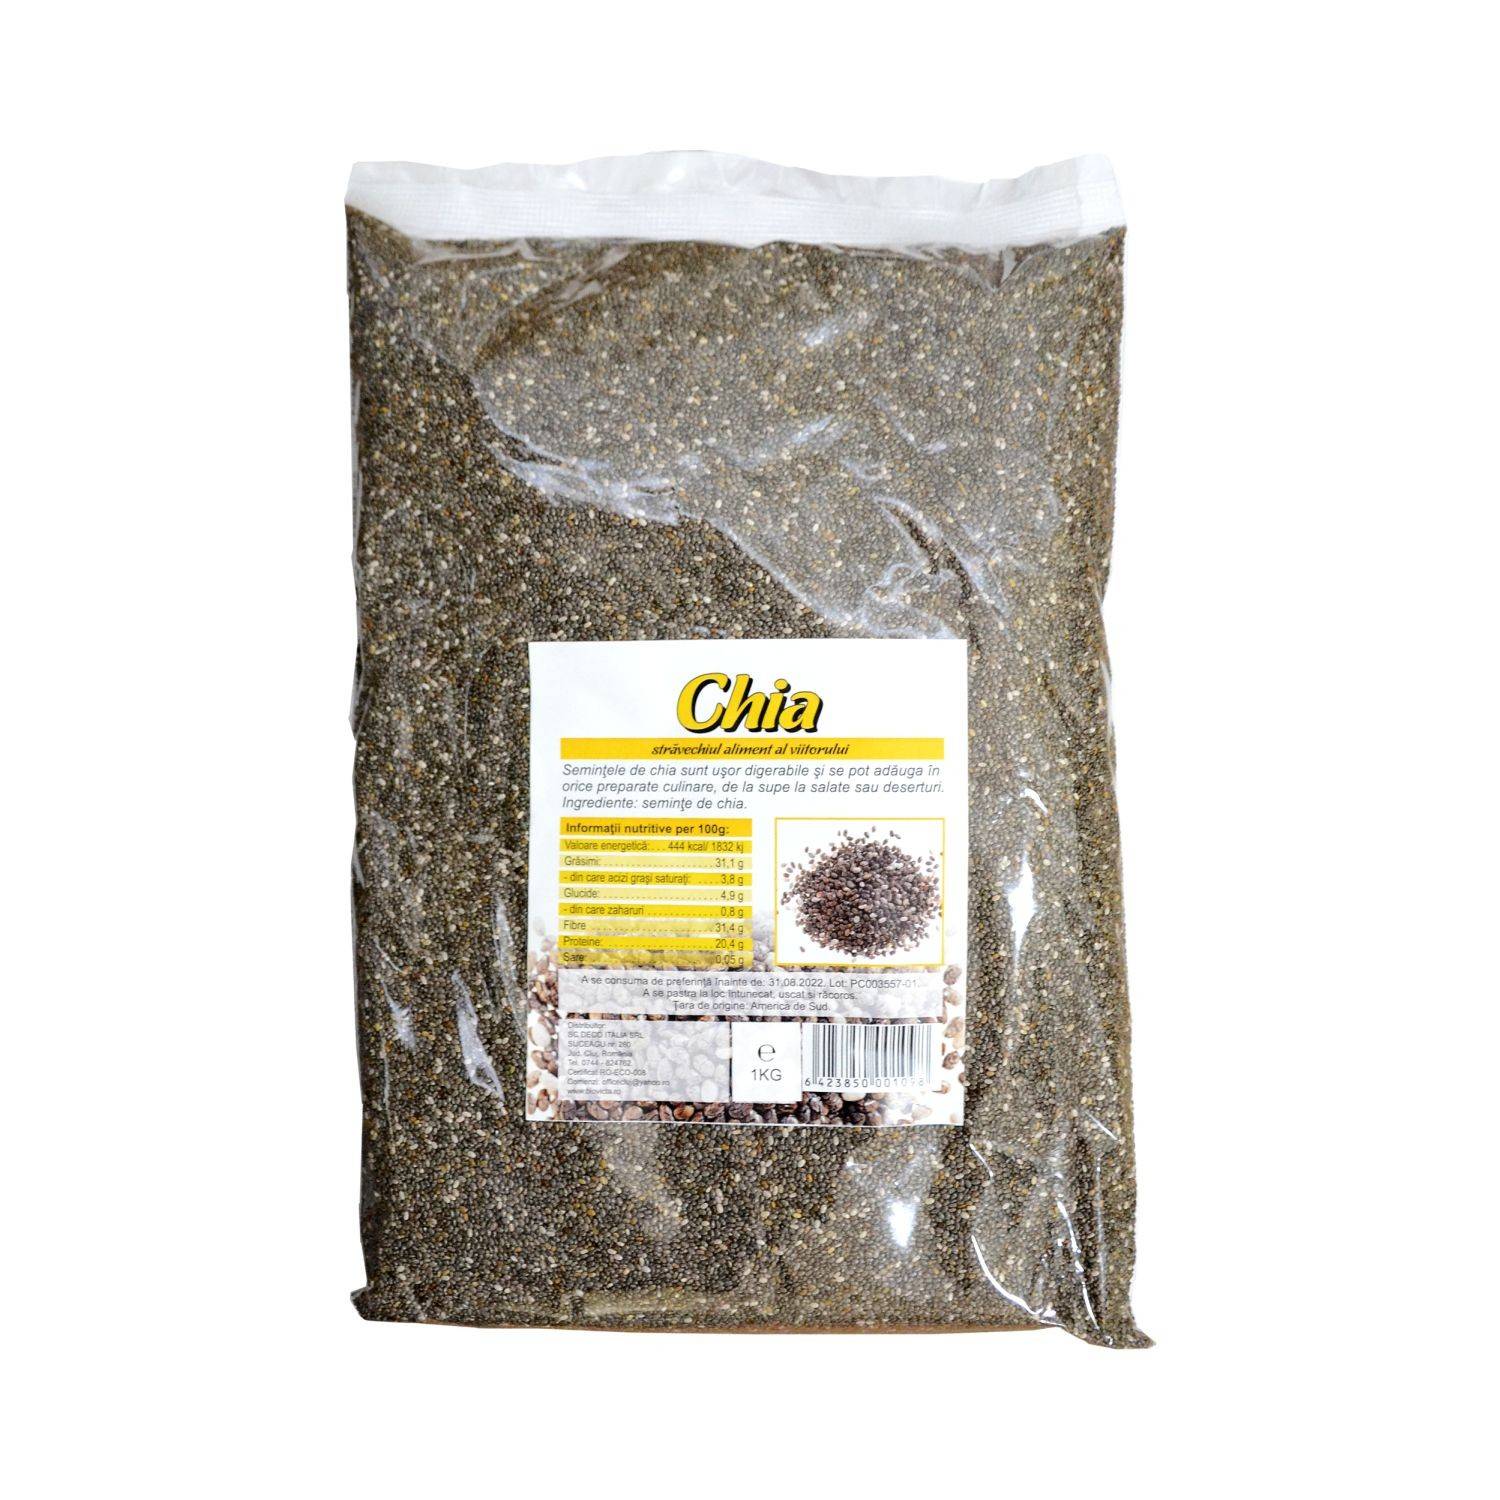 Seminte de chia crude, 1kg - deco italia